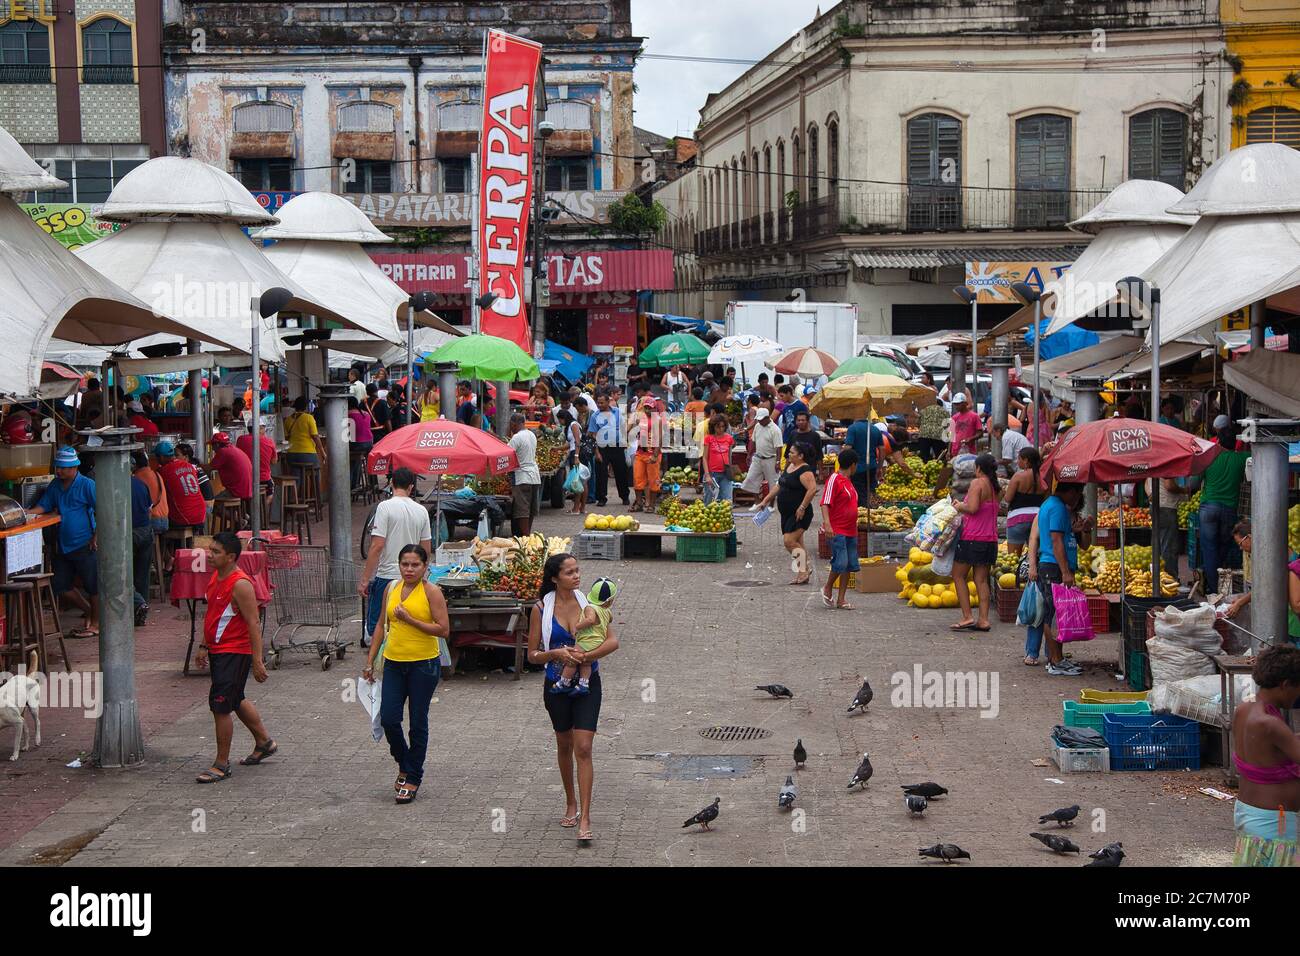 Eine allgemeine Szene von Menschen und Aktivitäten auf dem Markt in Belem in para State, Brasilien. Stockfoto